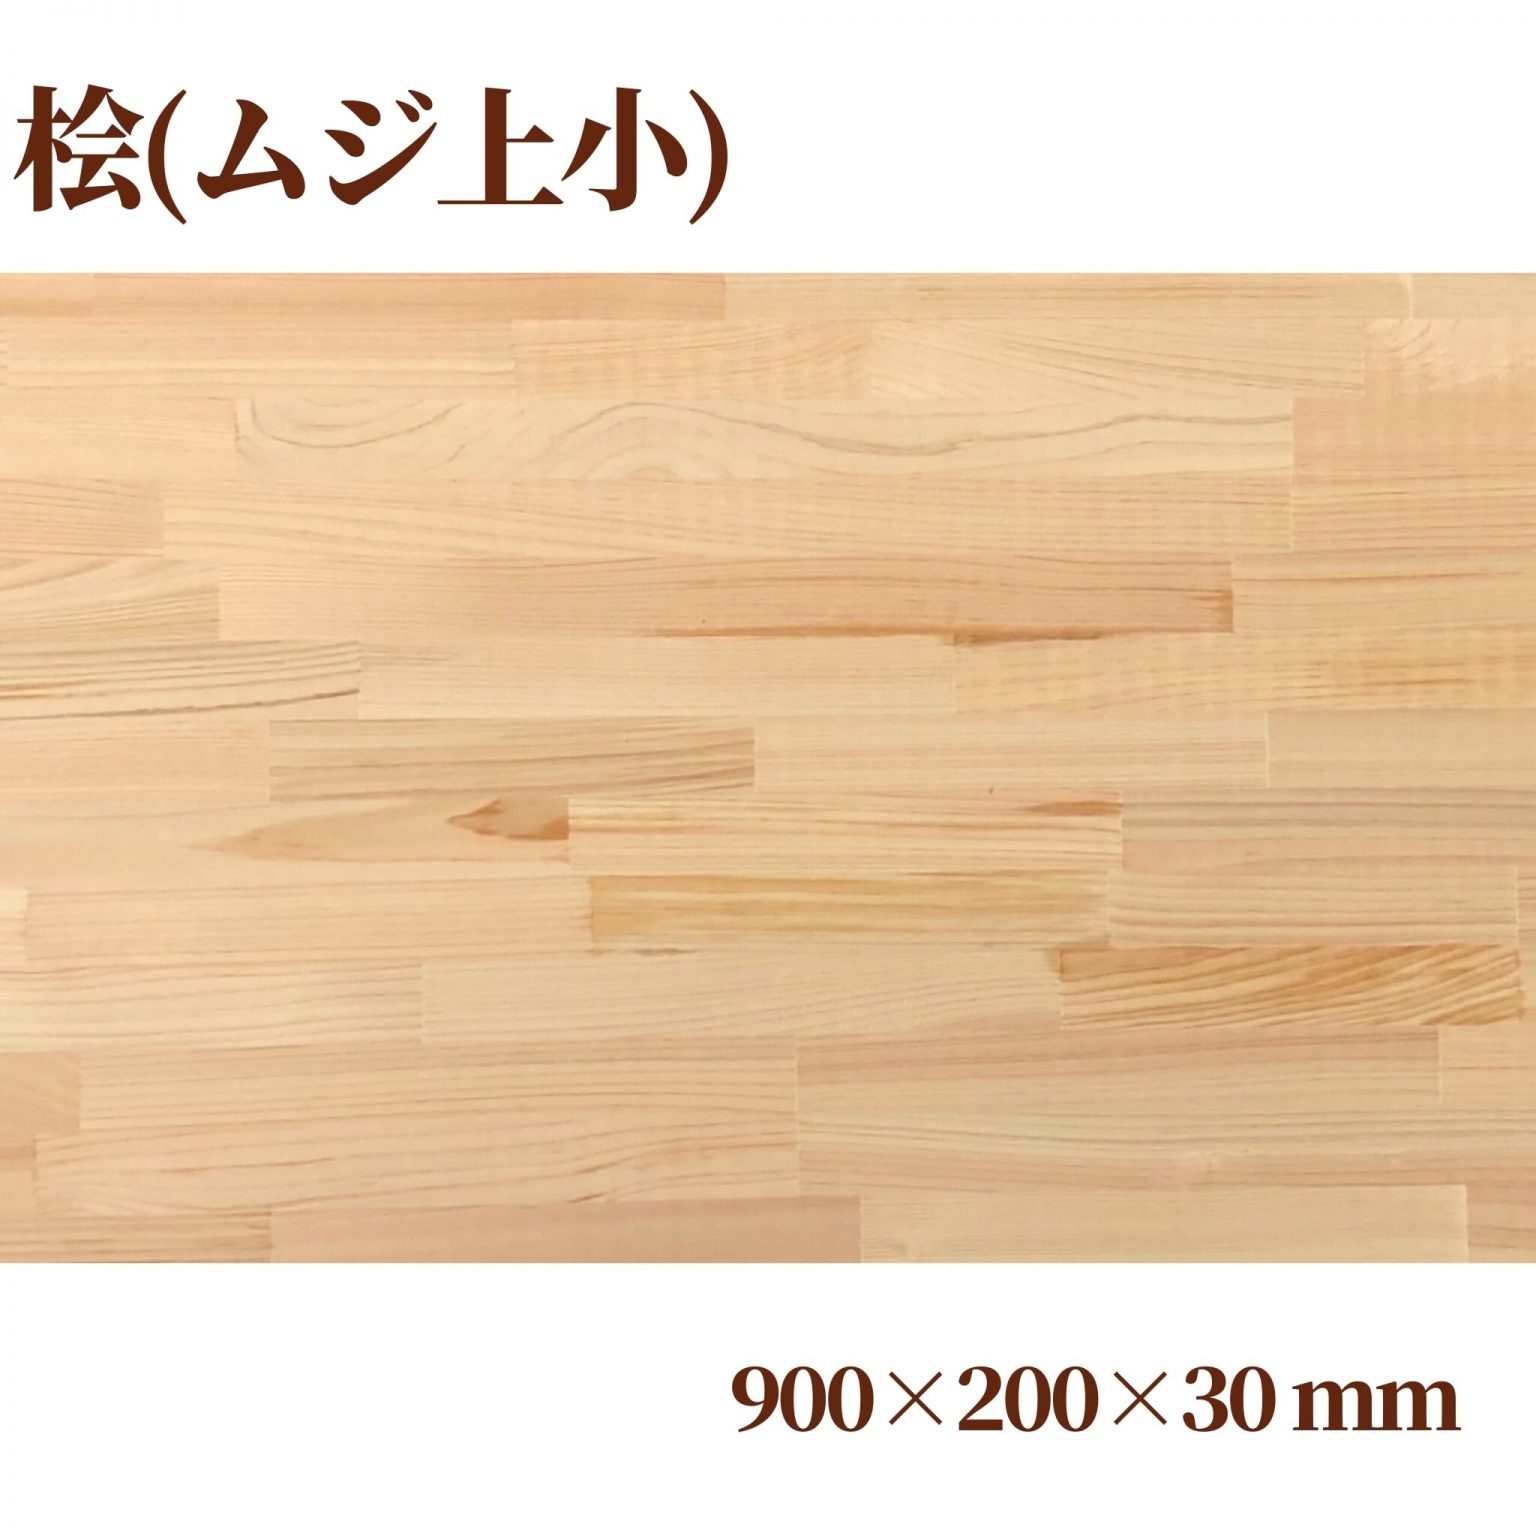 桧(ムジ上小)集成材 900×200×30(mm) | 自然素材の木材販売WoodyHappy